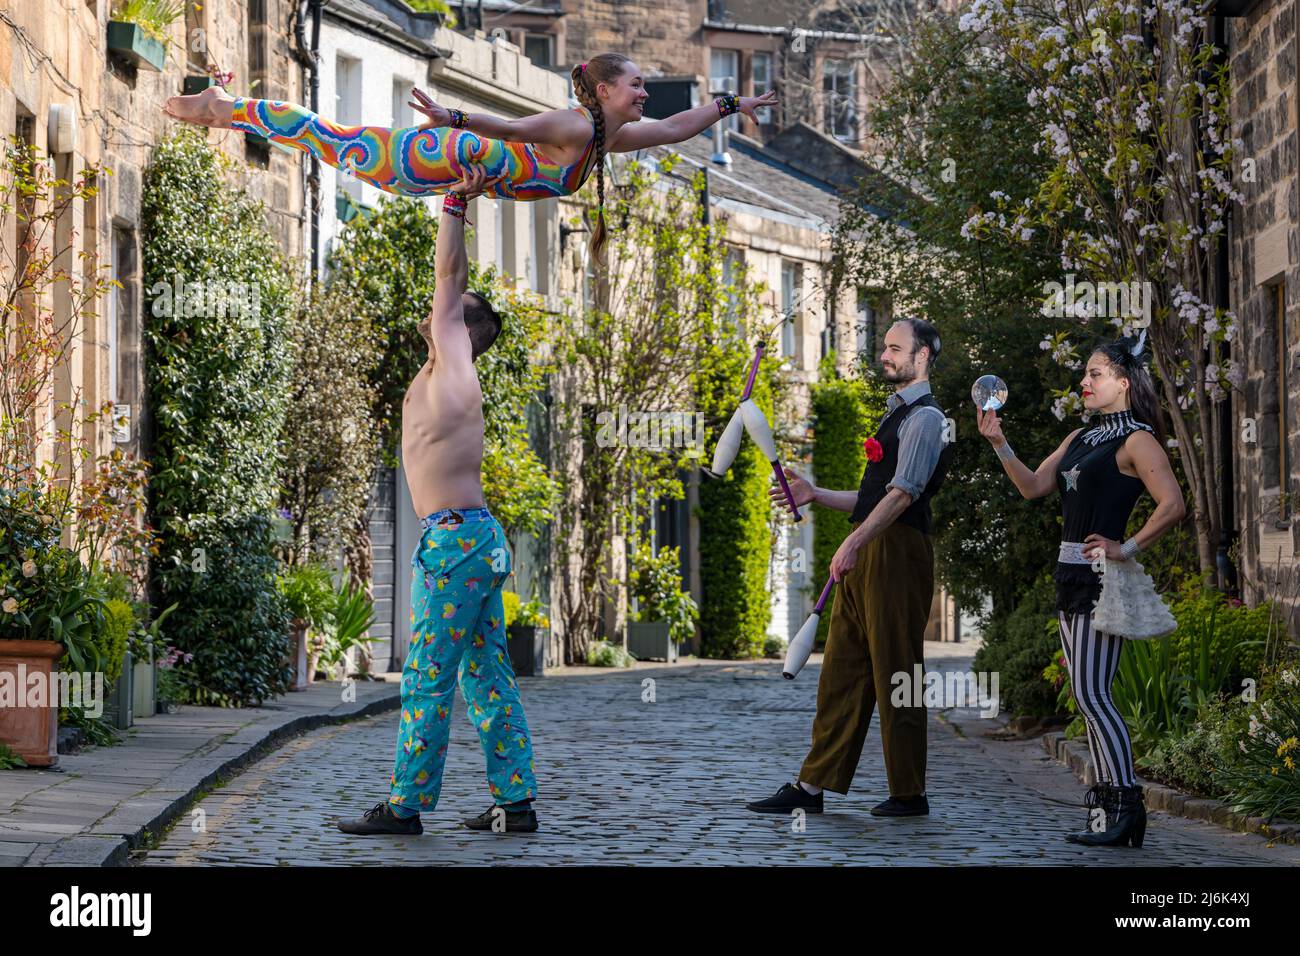 Akrobaten, Jongleur und Zirkusaufführen mit Kristallkugeln, Circus Lane, Edinburgh, Schottland, Großbritannien Stockfoto